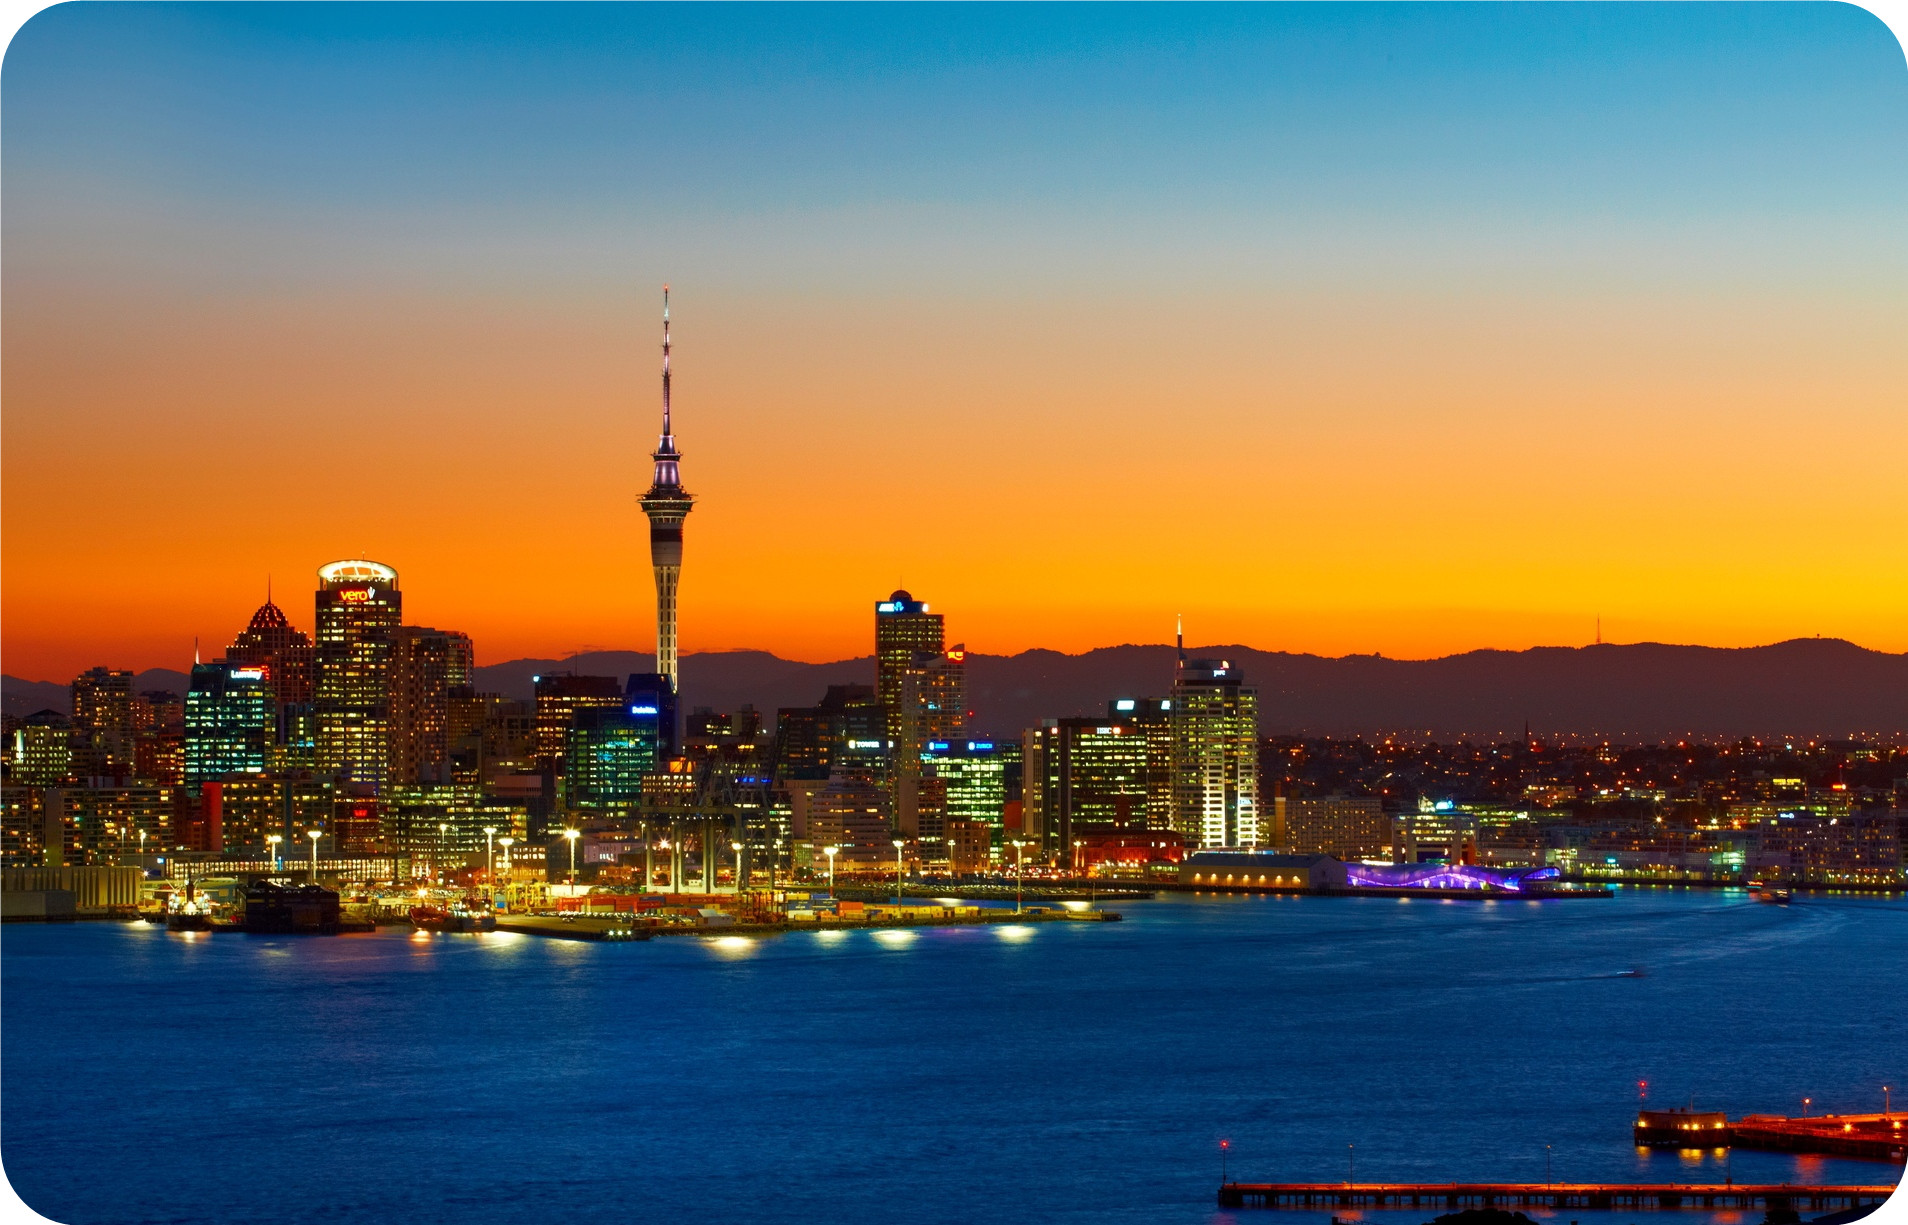 新西兰 奥克兰天空塔门票(360度全景观景台 可选蹦极/高空漫步)